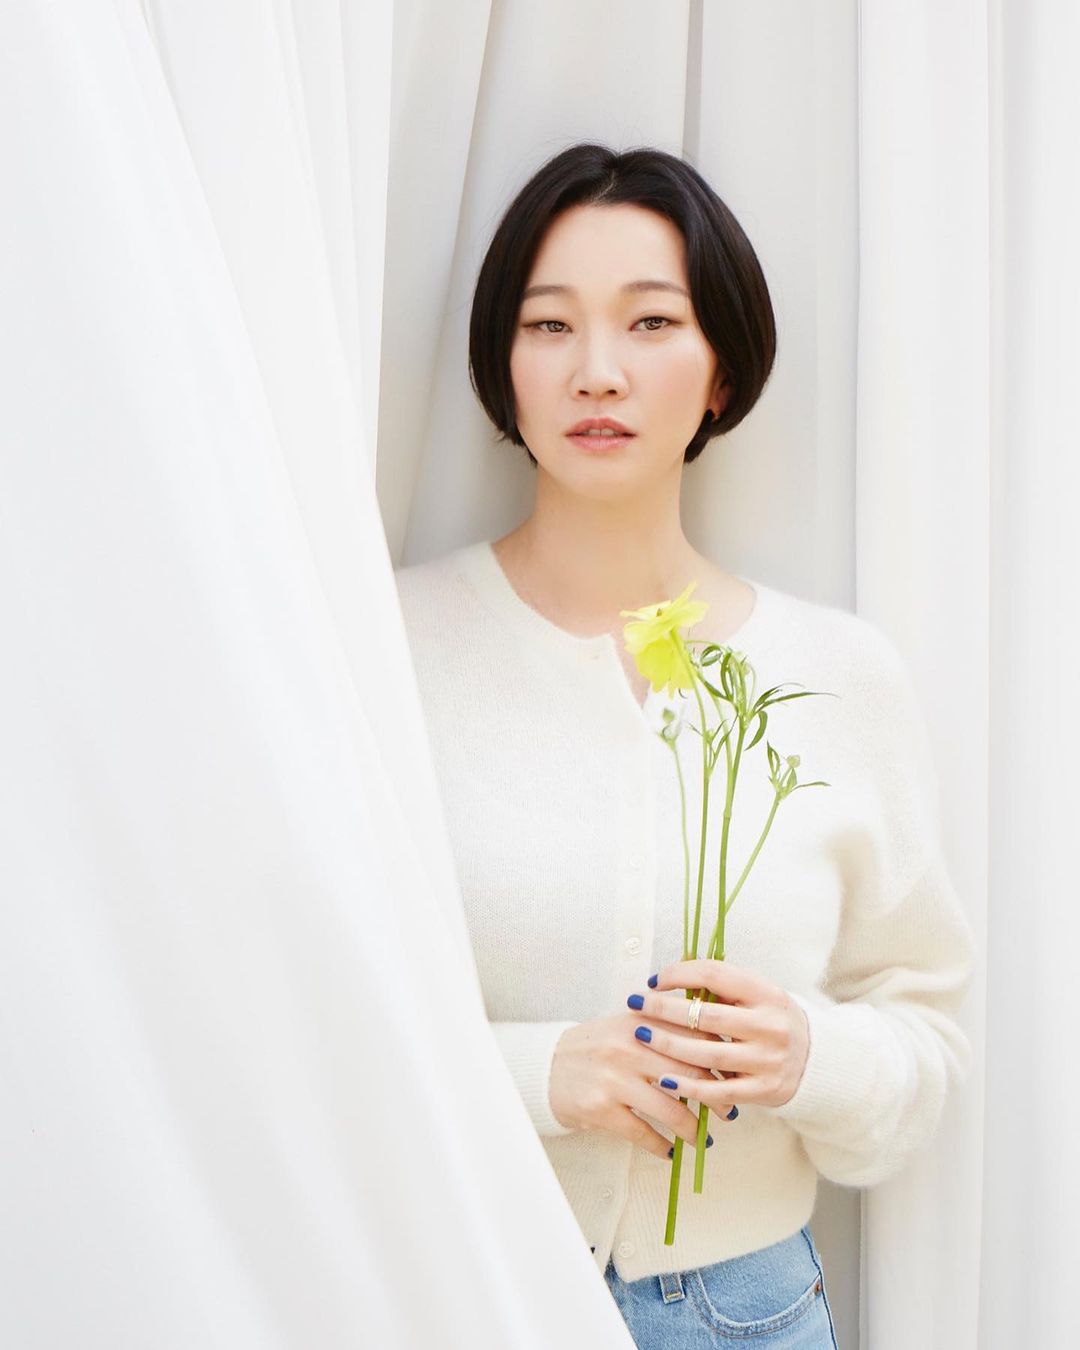 بیوگرافی جانگ یون جو بازیگر سریال مانی هیست ورژن کره ای